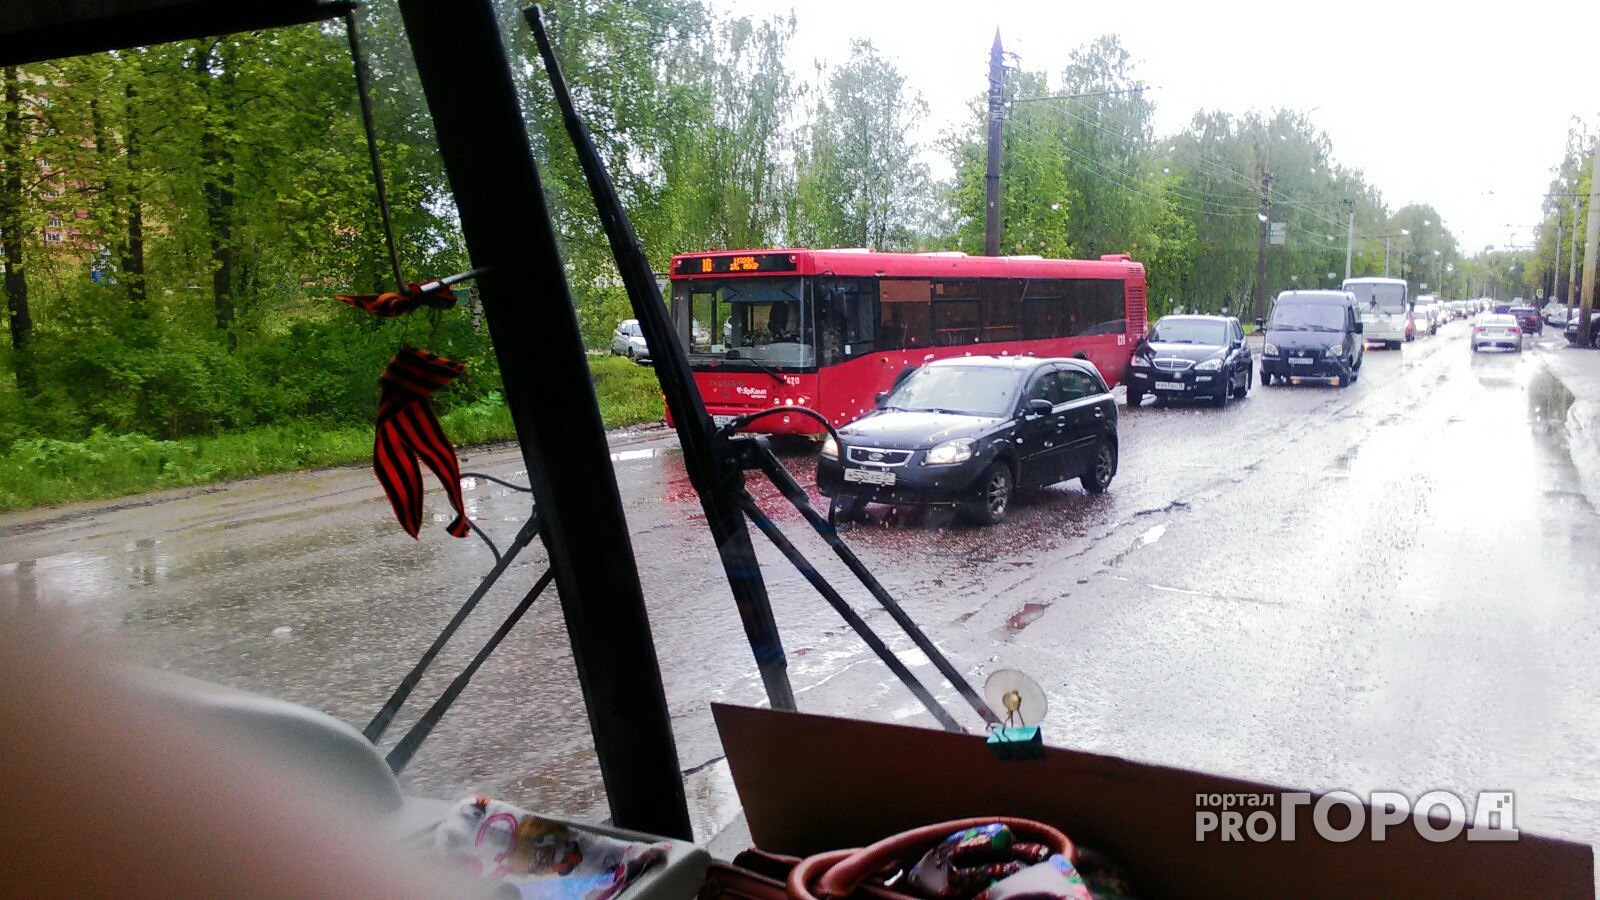 В Ярославле новенький красный автобус попал в ДТП с иномаркой